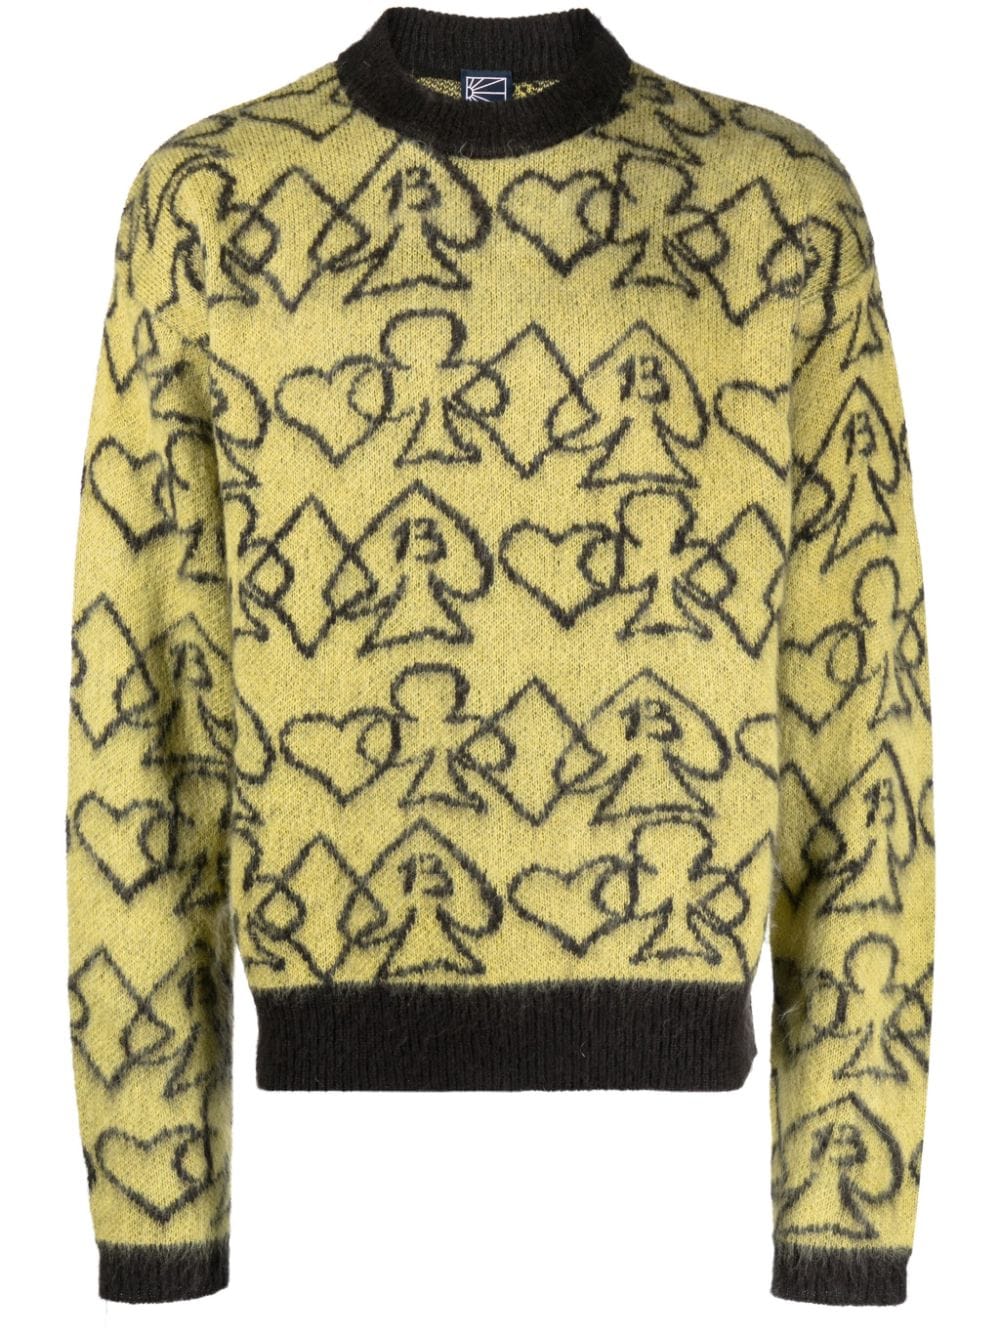 Louis Vuitton Black & Yellow Knit Jersey